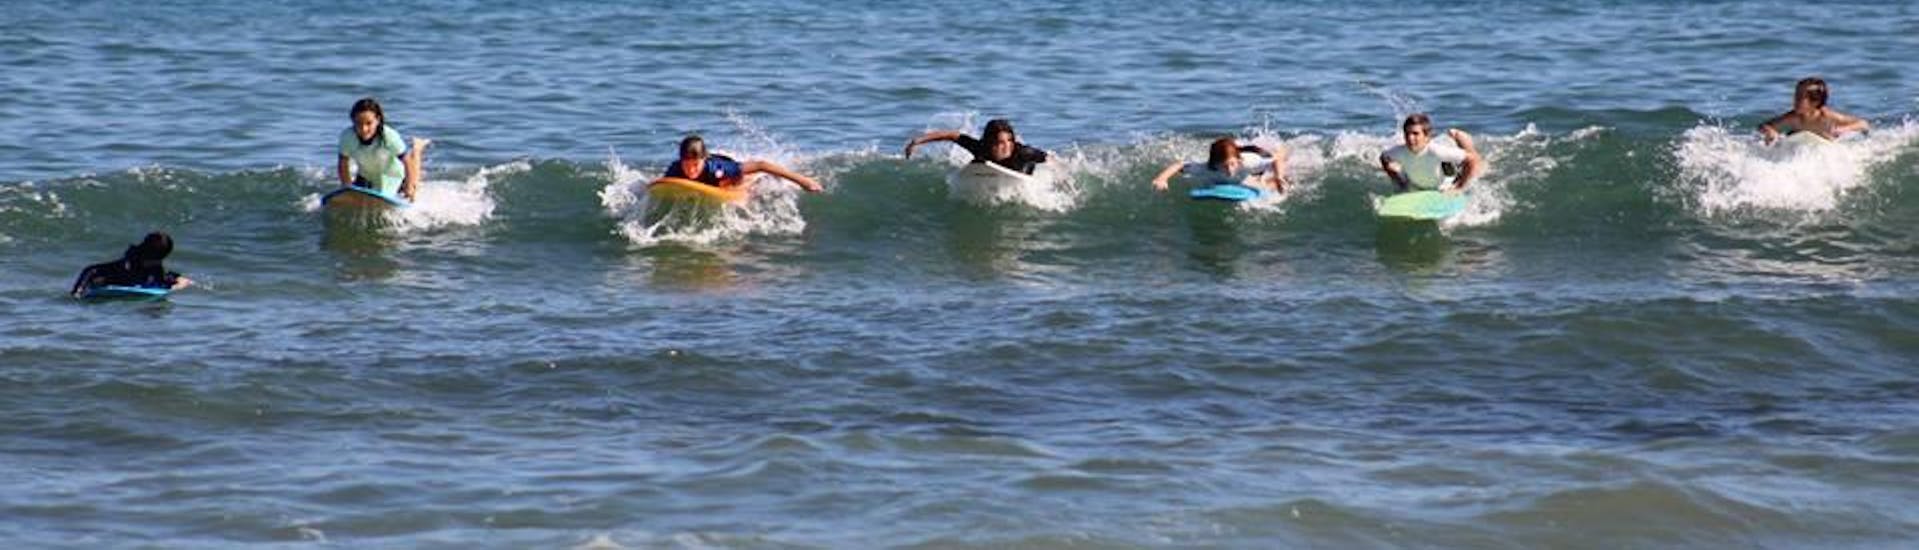 Curso de Surf para Niños & Adultos - Todos los Niveles.